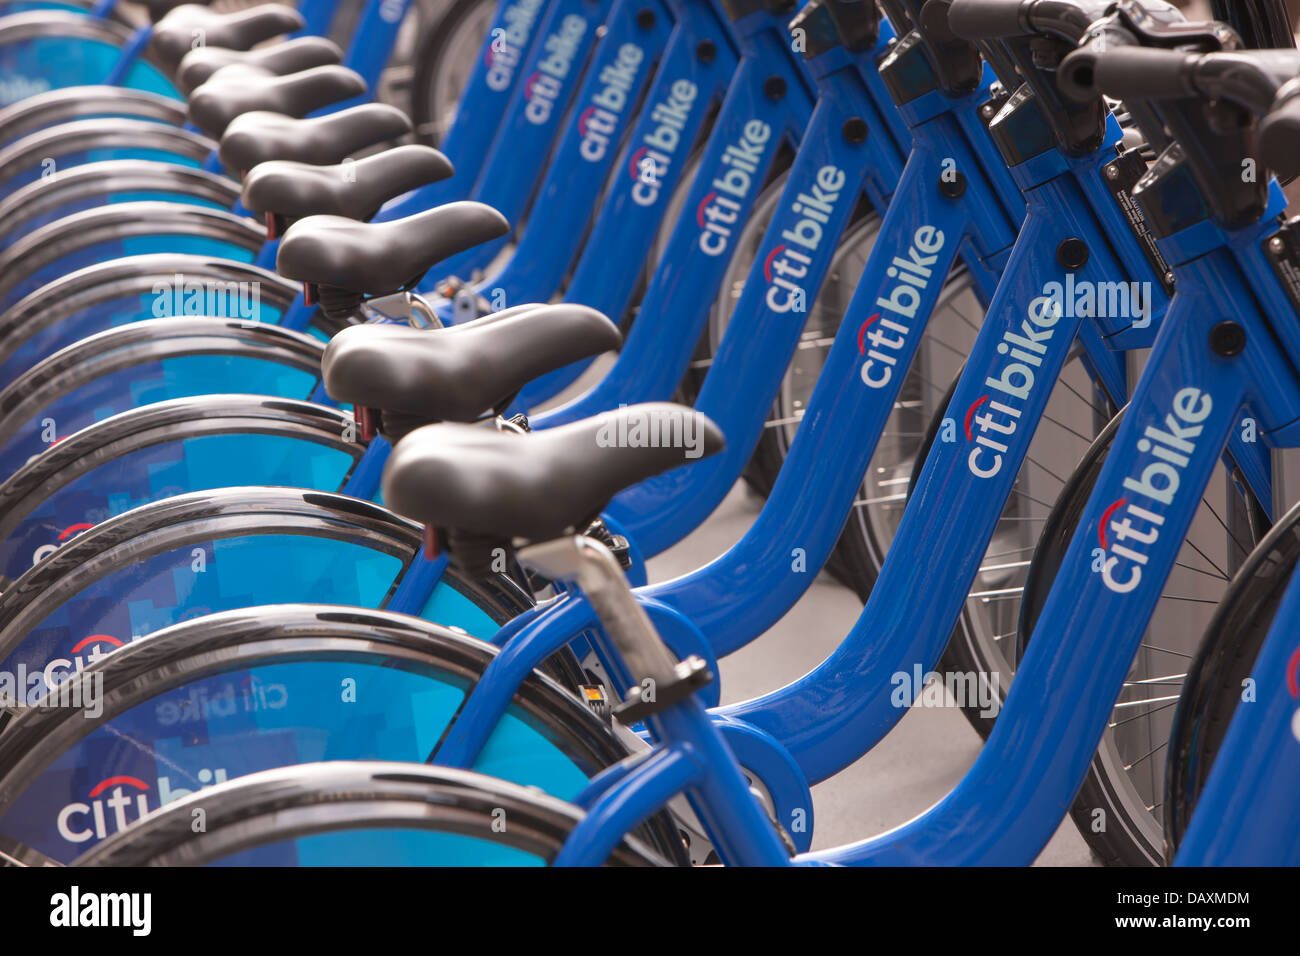 Les vélos publics de la CITI Bike vélo programme partage NYC attendre dans leurs stations d'accueil pour les cavaliers. Banque D'Images